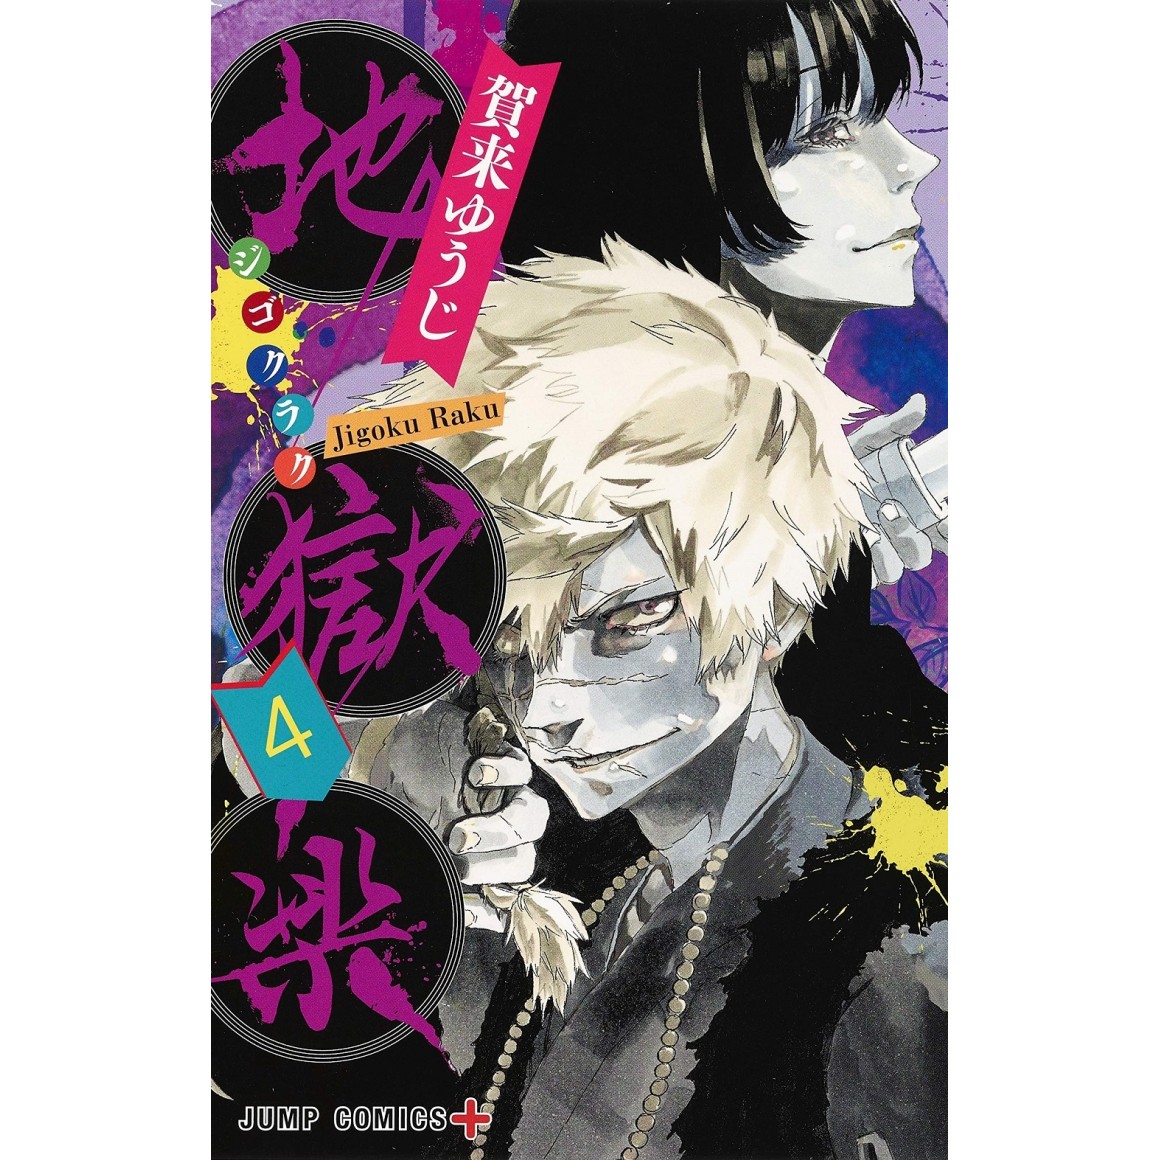 JIGOKURAKU - Hell's Paradise vol. 9 - Edição japonesa